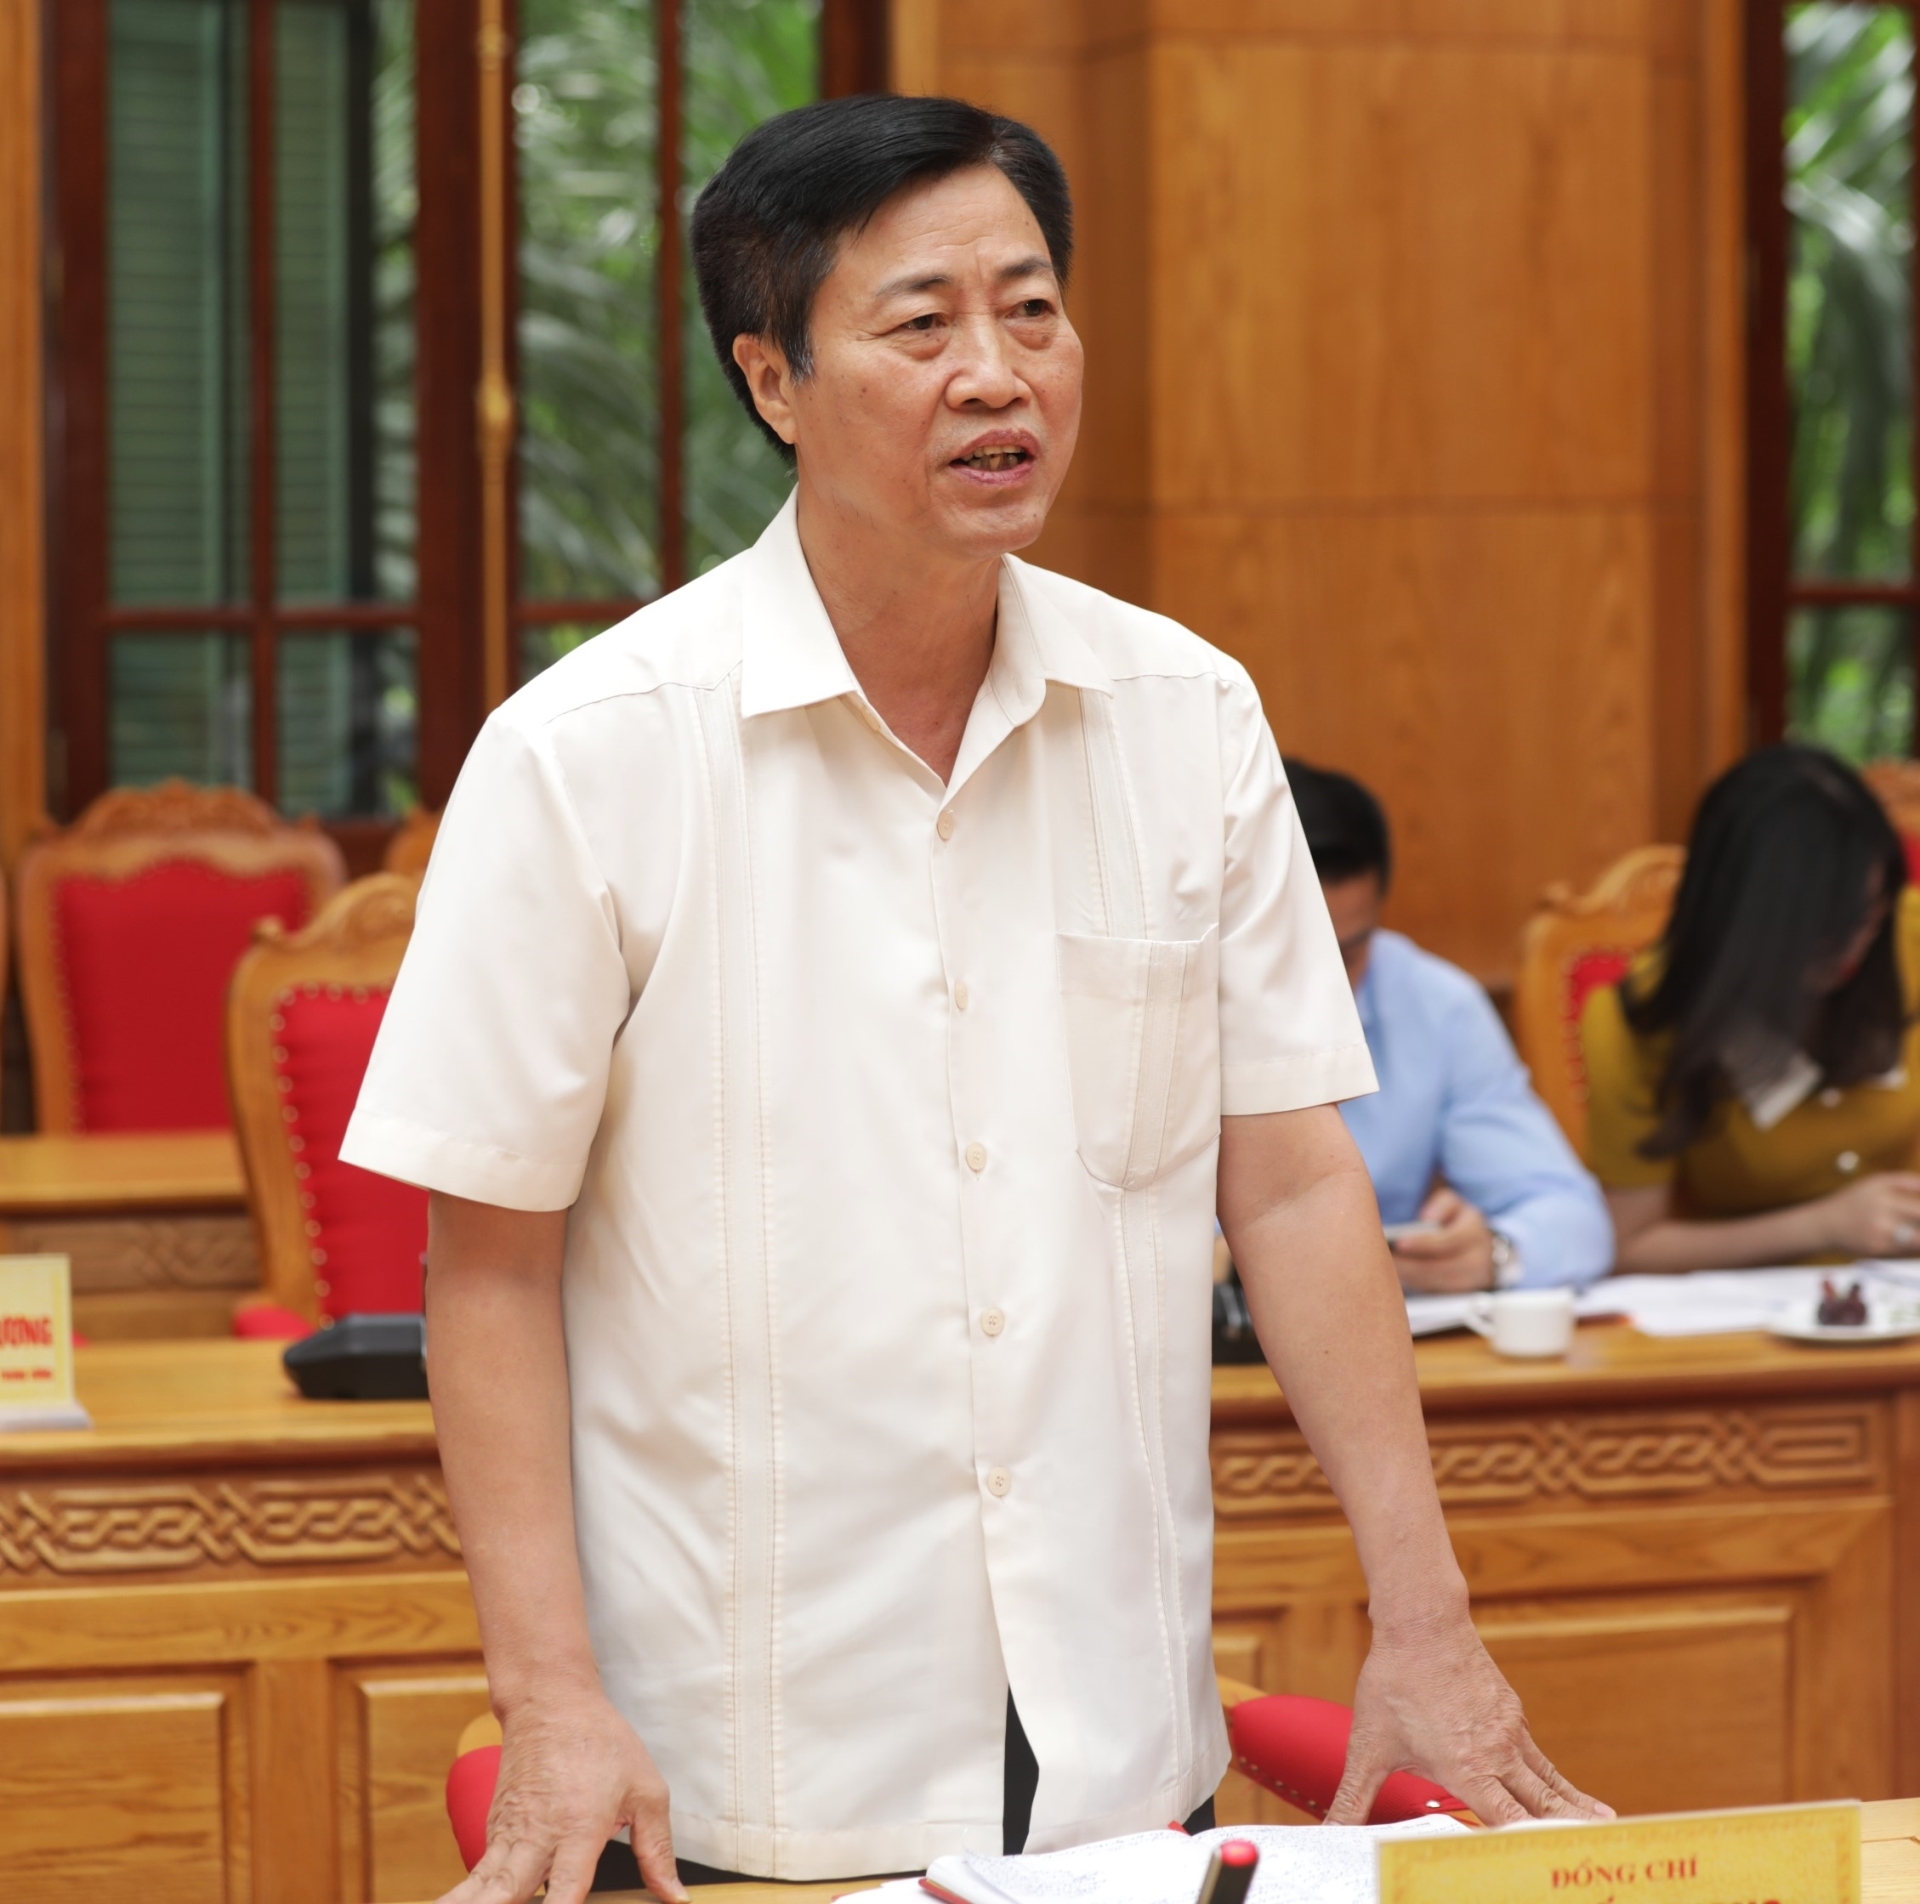 Đồng chí Bùi Tuấn Quang, Phó Trưởng ban Dân vận Trung ương phát biểu tại hội nghị.